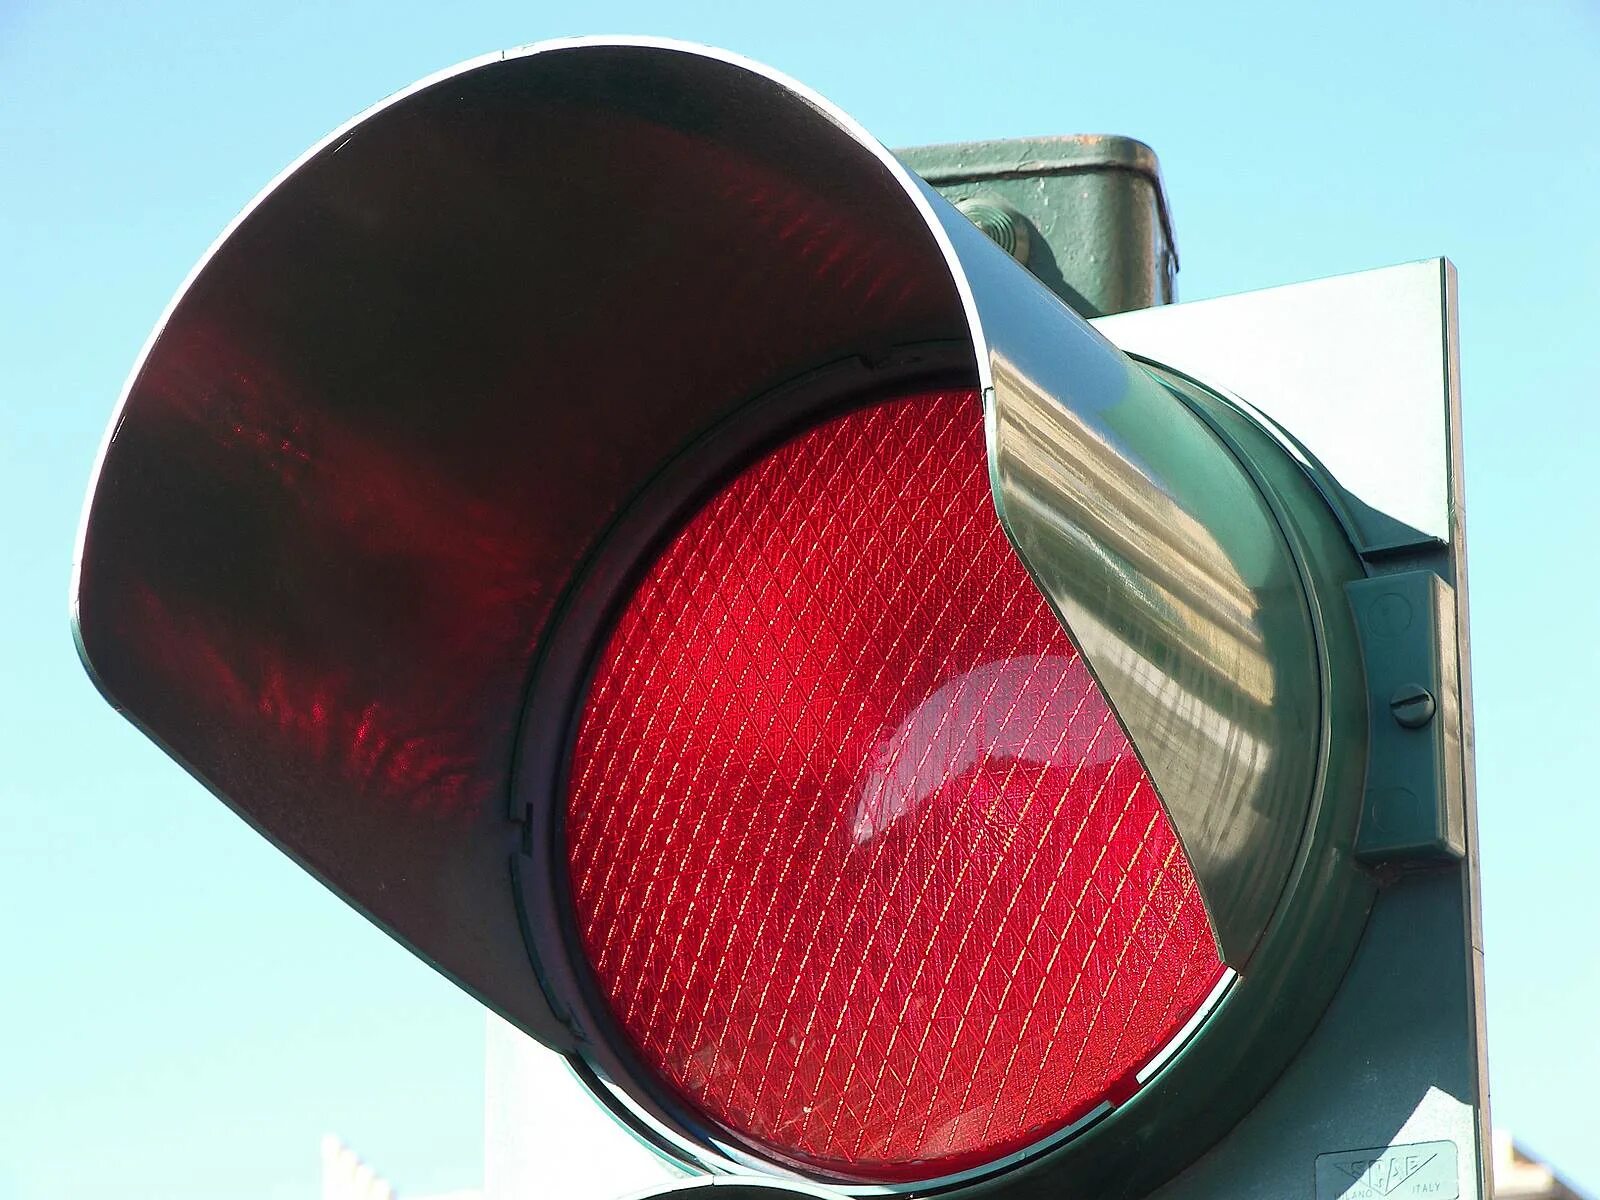 Traffic light red. Красный светофор. Красный йвет световофра. Красный свет светофора. Запрещающий сигнал светофора.